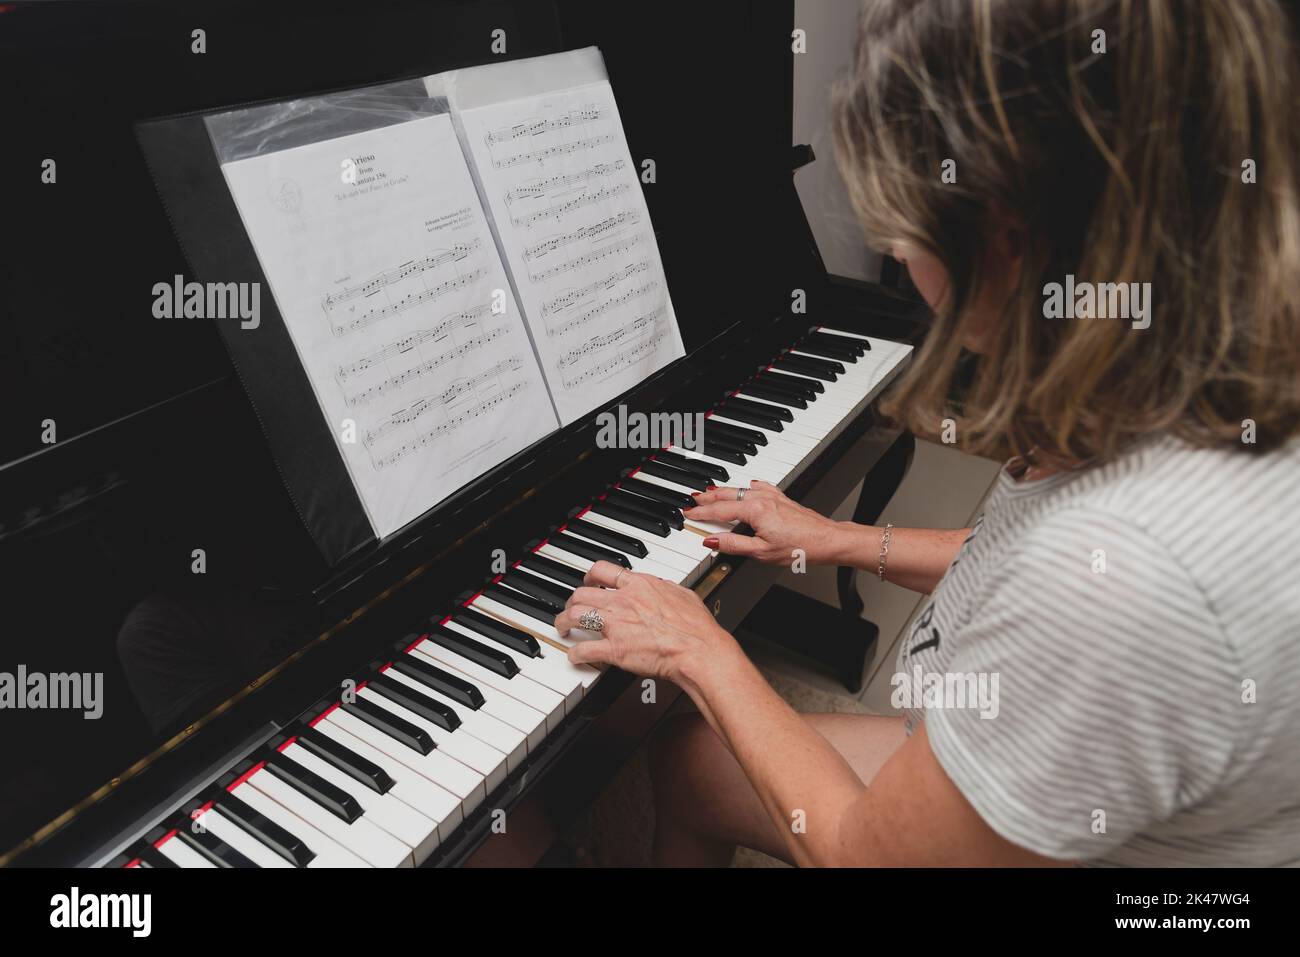 Belle pianiste brésilienne femme touchant les touches du piano, jouant du piano droit. Concept d'enseignement de la musique et des arts détendez-vous et joyeux. Banque D'Images